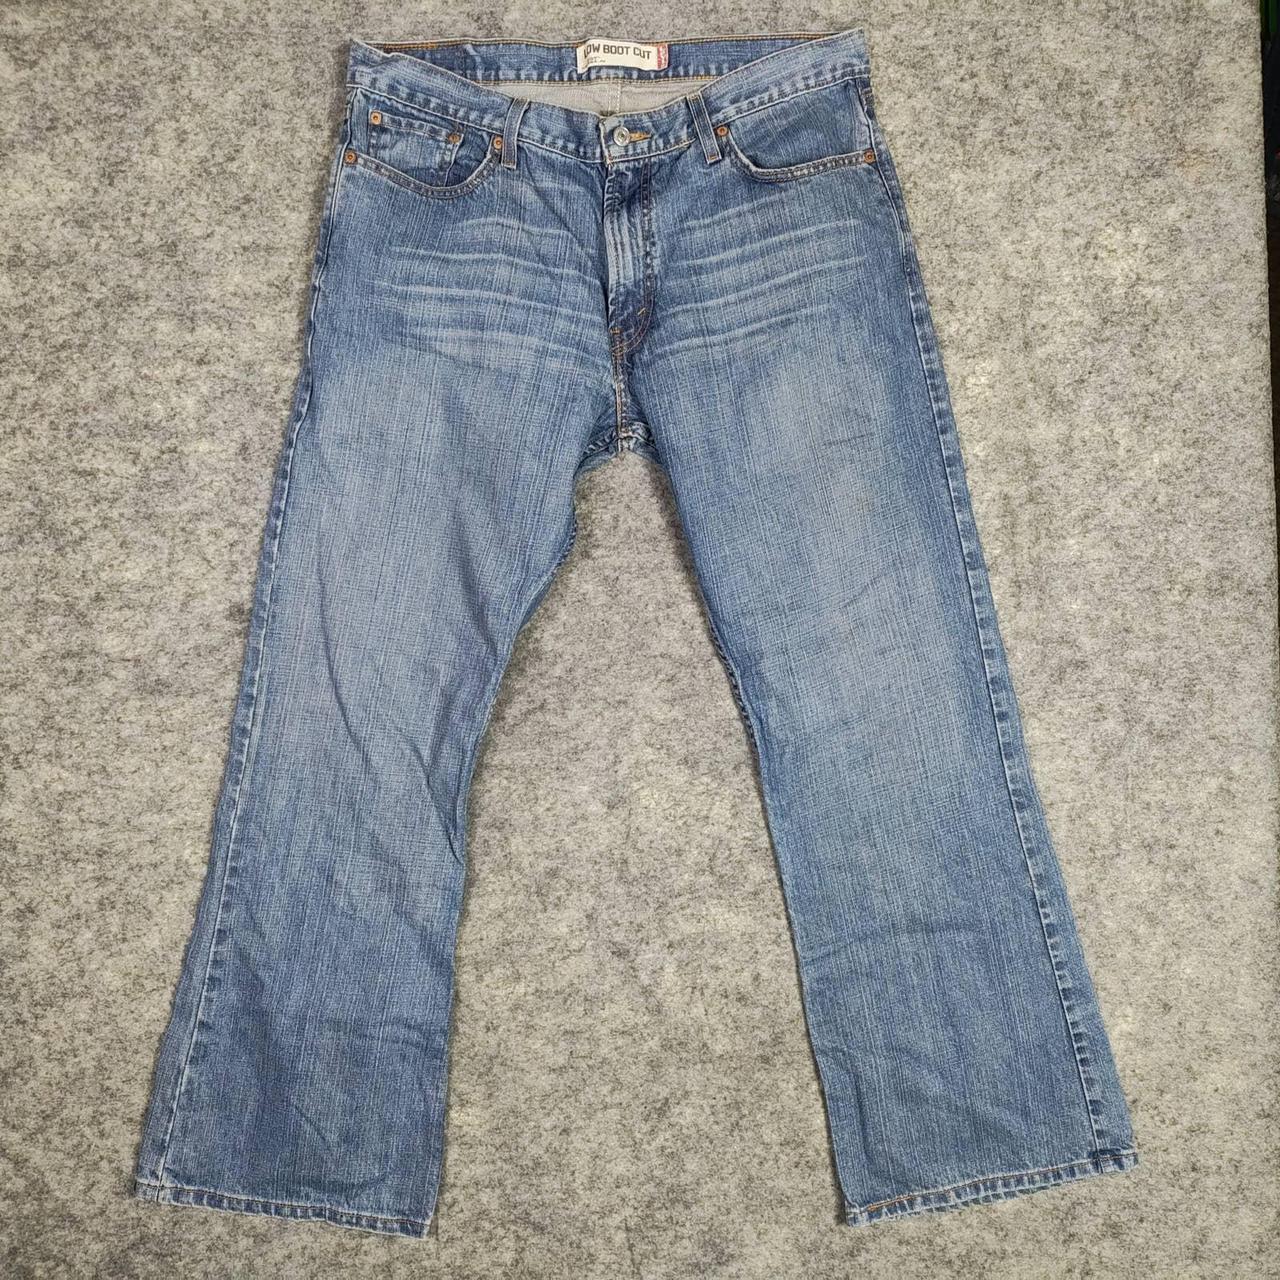 Levis Vintage Jeans Mens 36x30 527 Low Boot Cut... - Depop